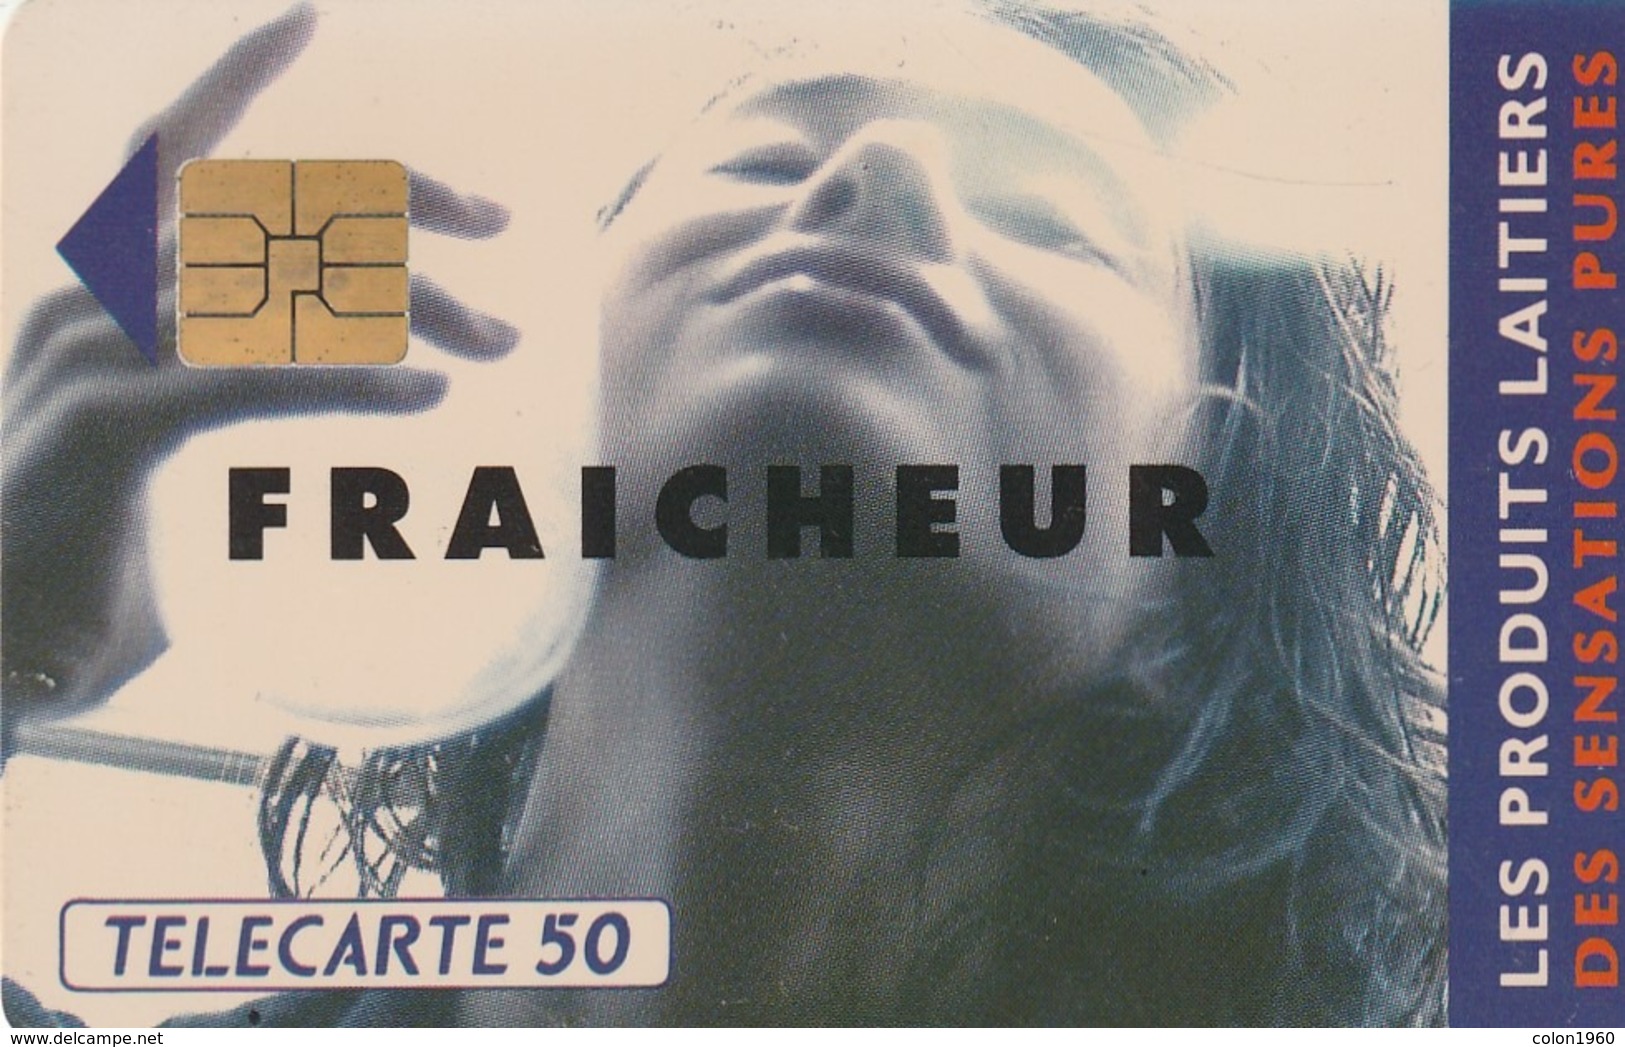 FRANCIA. Produits Laitiers: Fraicheur. 0329. 02/93. (247). - 1993